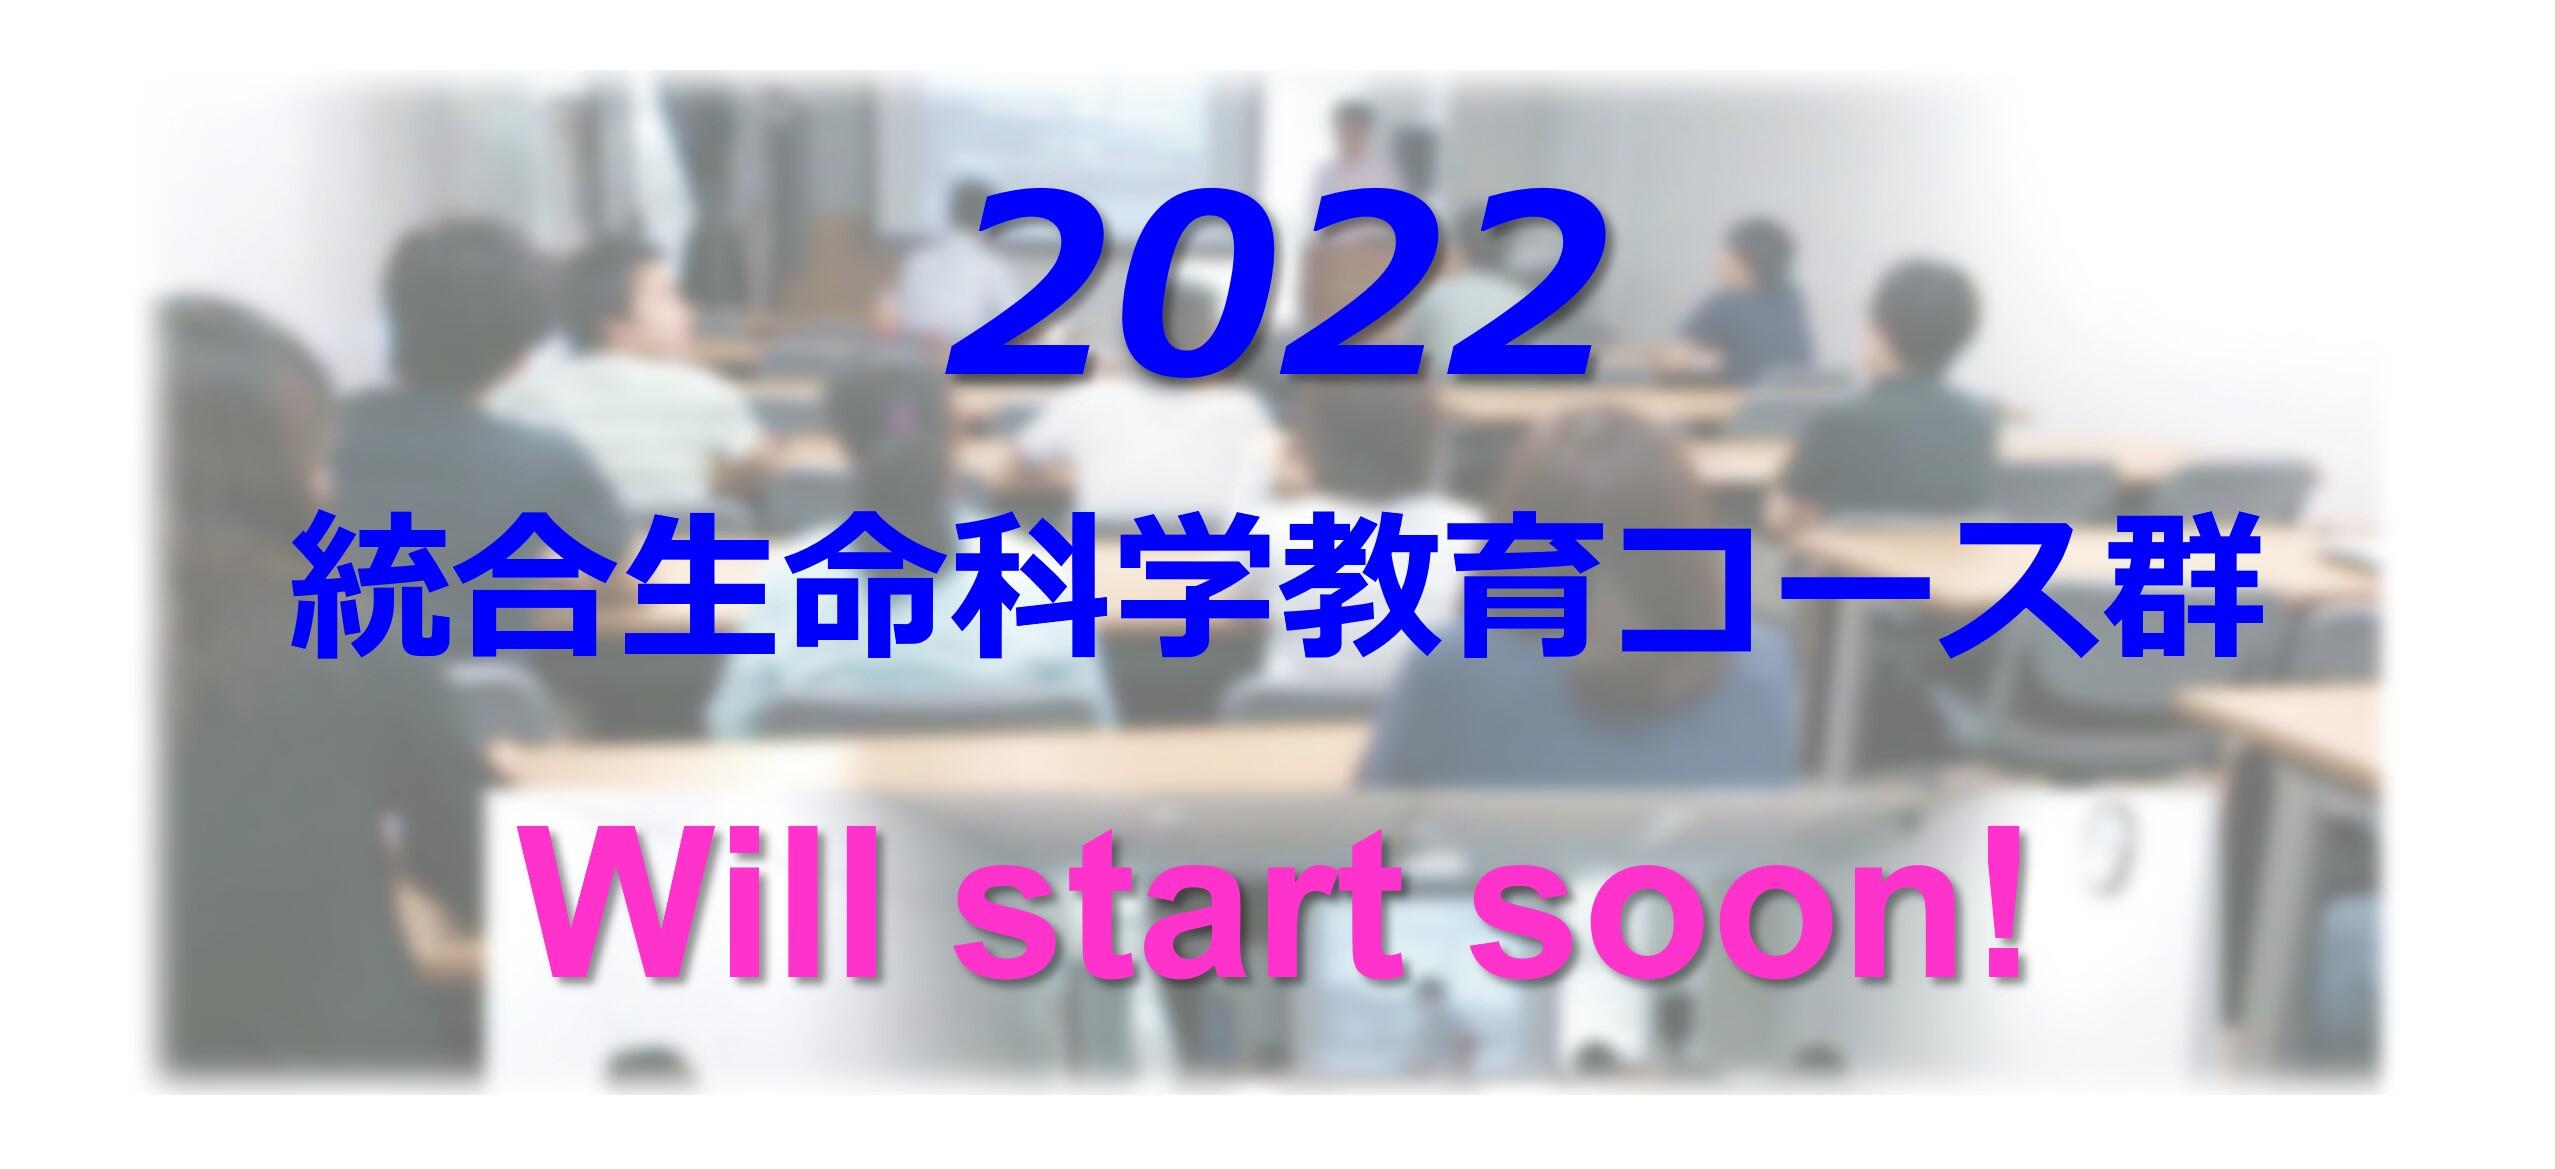 2022_start.jpg